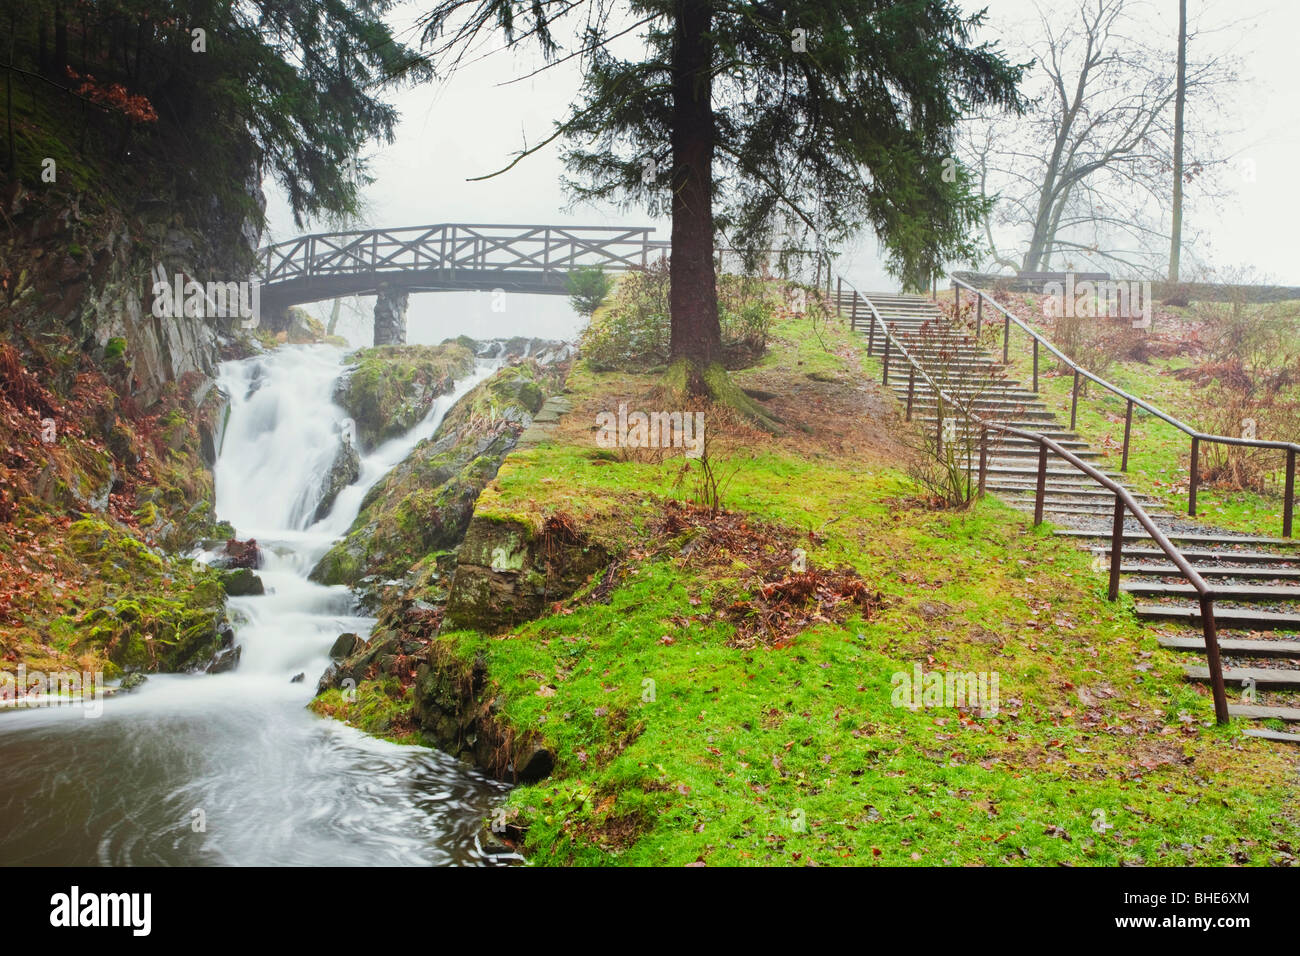 Ruhiger Wasserfall, der unter einer hölzernen Brücke in einem üppigen Park der Tschechischen Republik fließt, mit Stufen, die auf einen grasbewachsenen Hügel führen Stockfoto